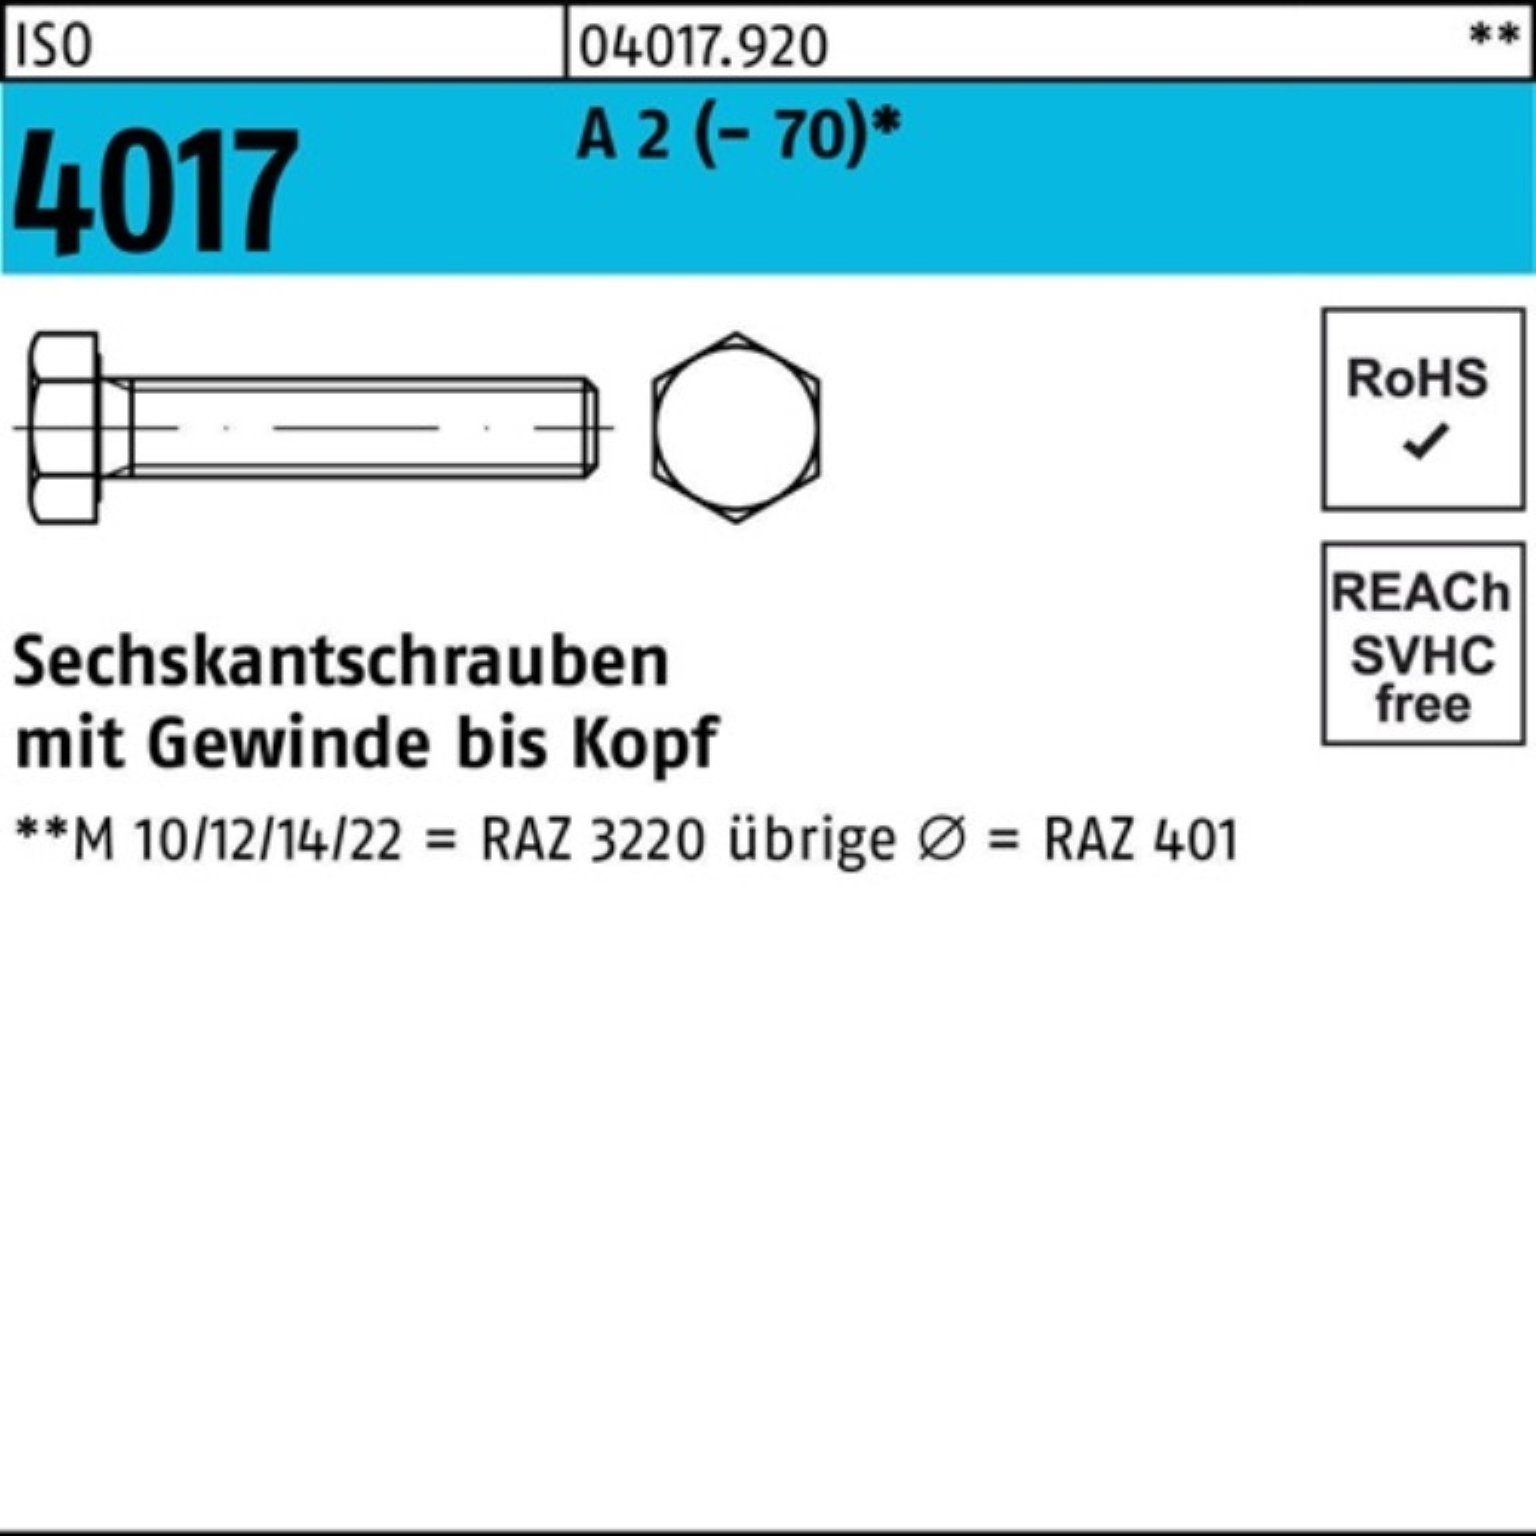 Bufab Sechskantschraube 100er Pack Sechskantschraube VG (70) M10x A ISO 2 100 Stück 50 4017